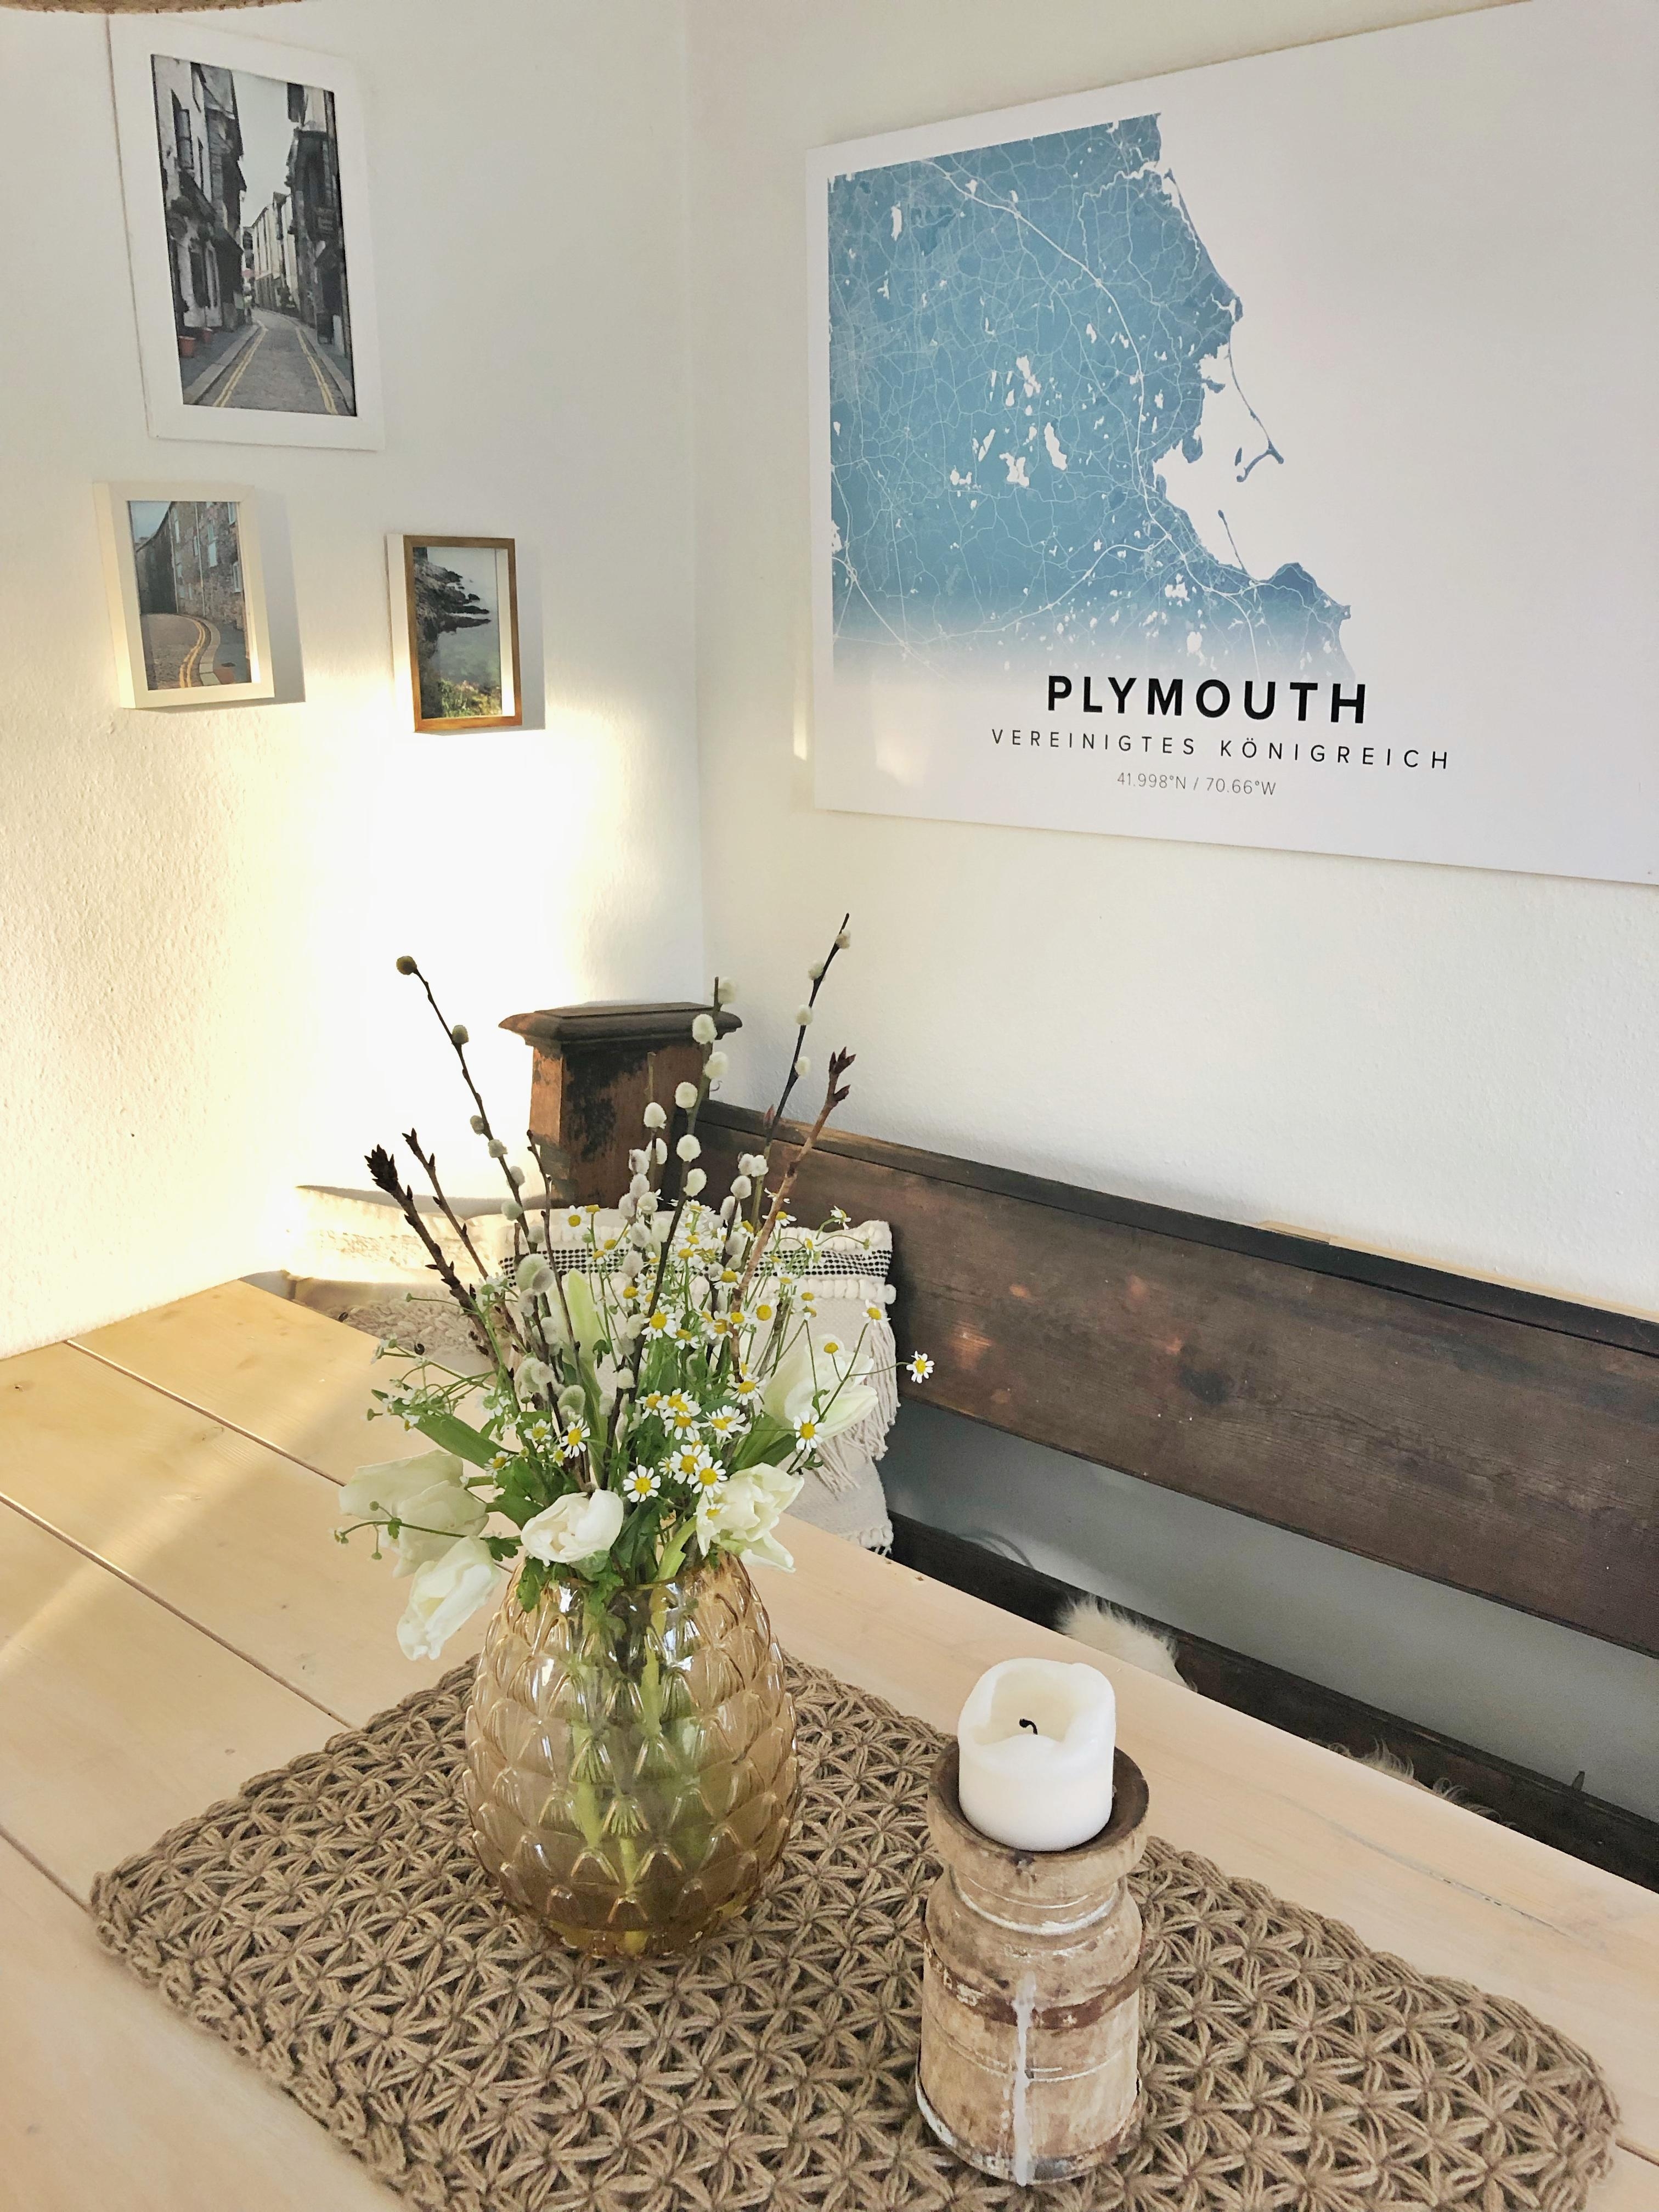 Plymouth meine Geburtsstadt 😍
#plymouth#essplatz#couchstyle#cozy#interior#flowers#sunisshining